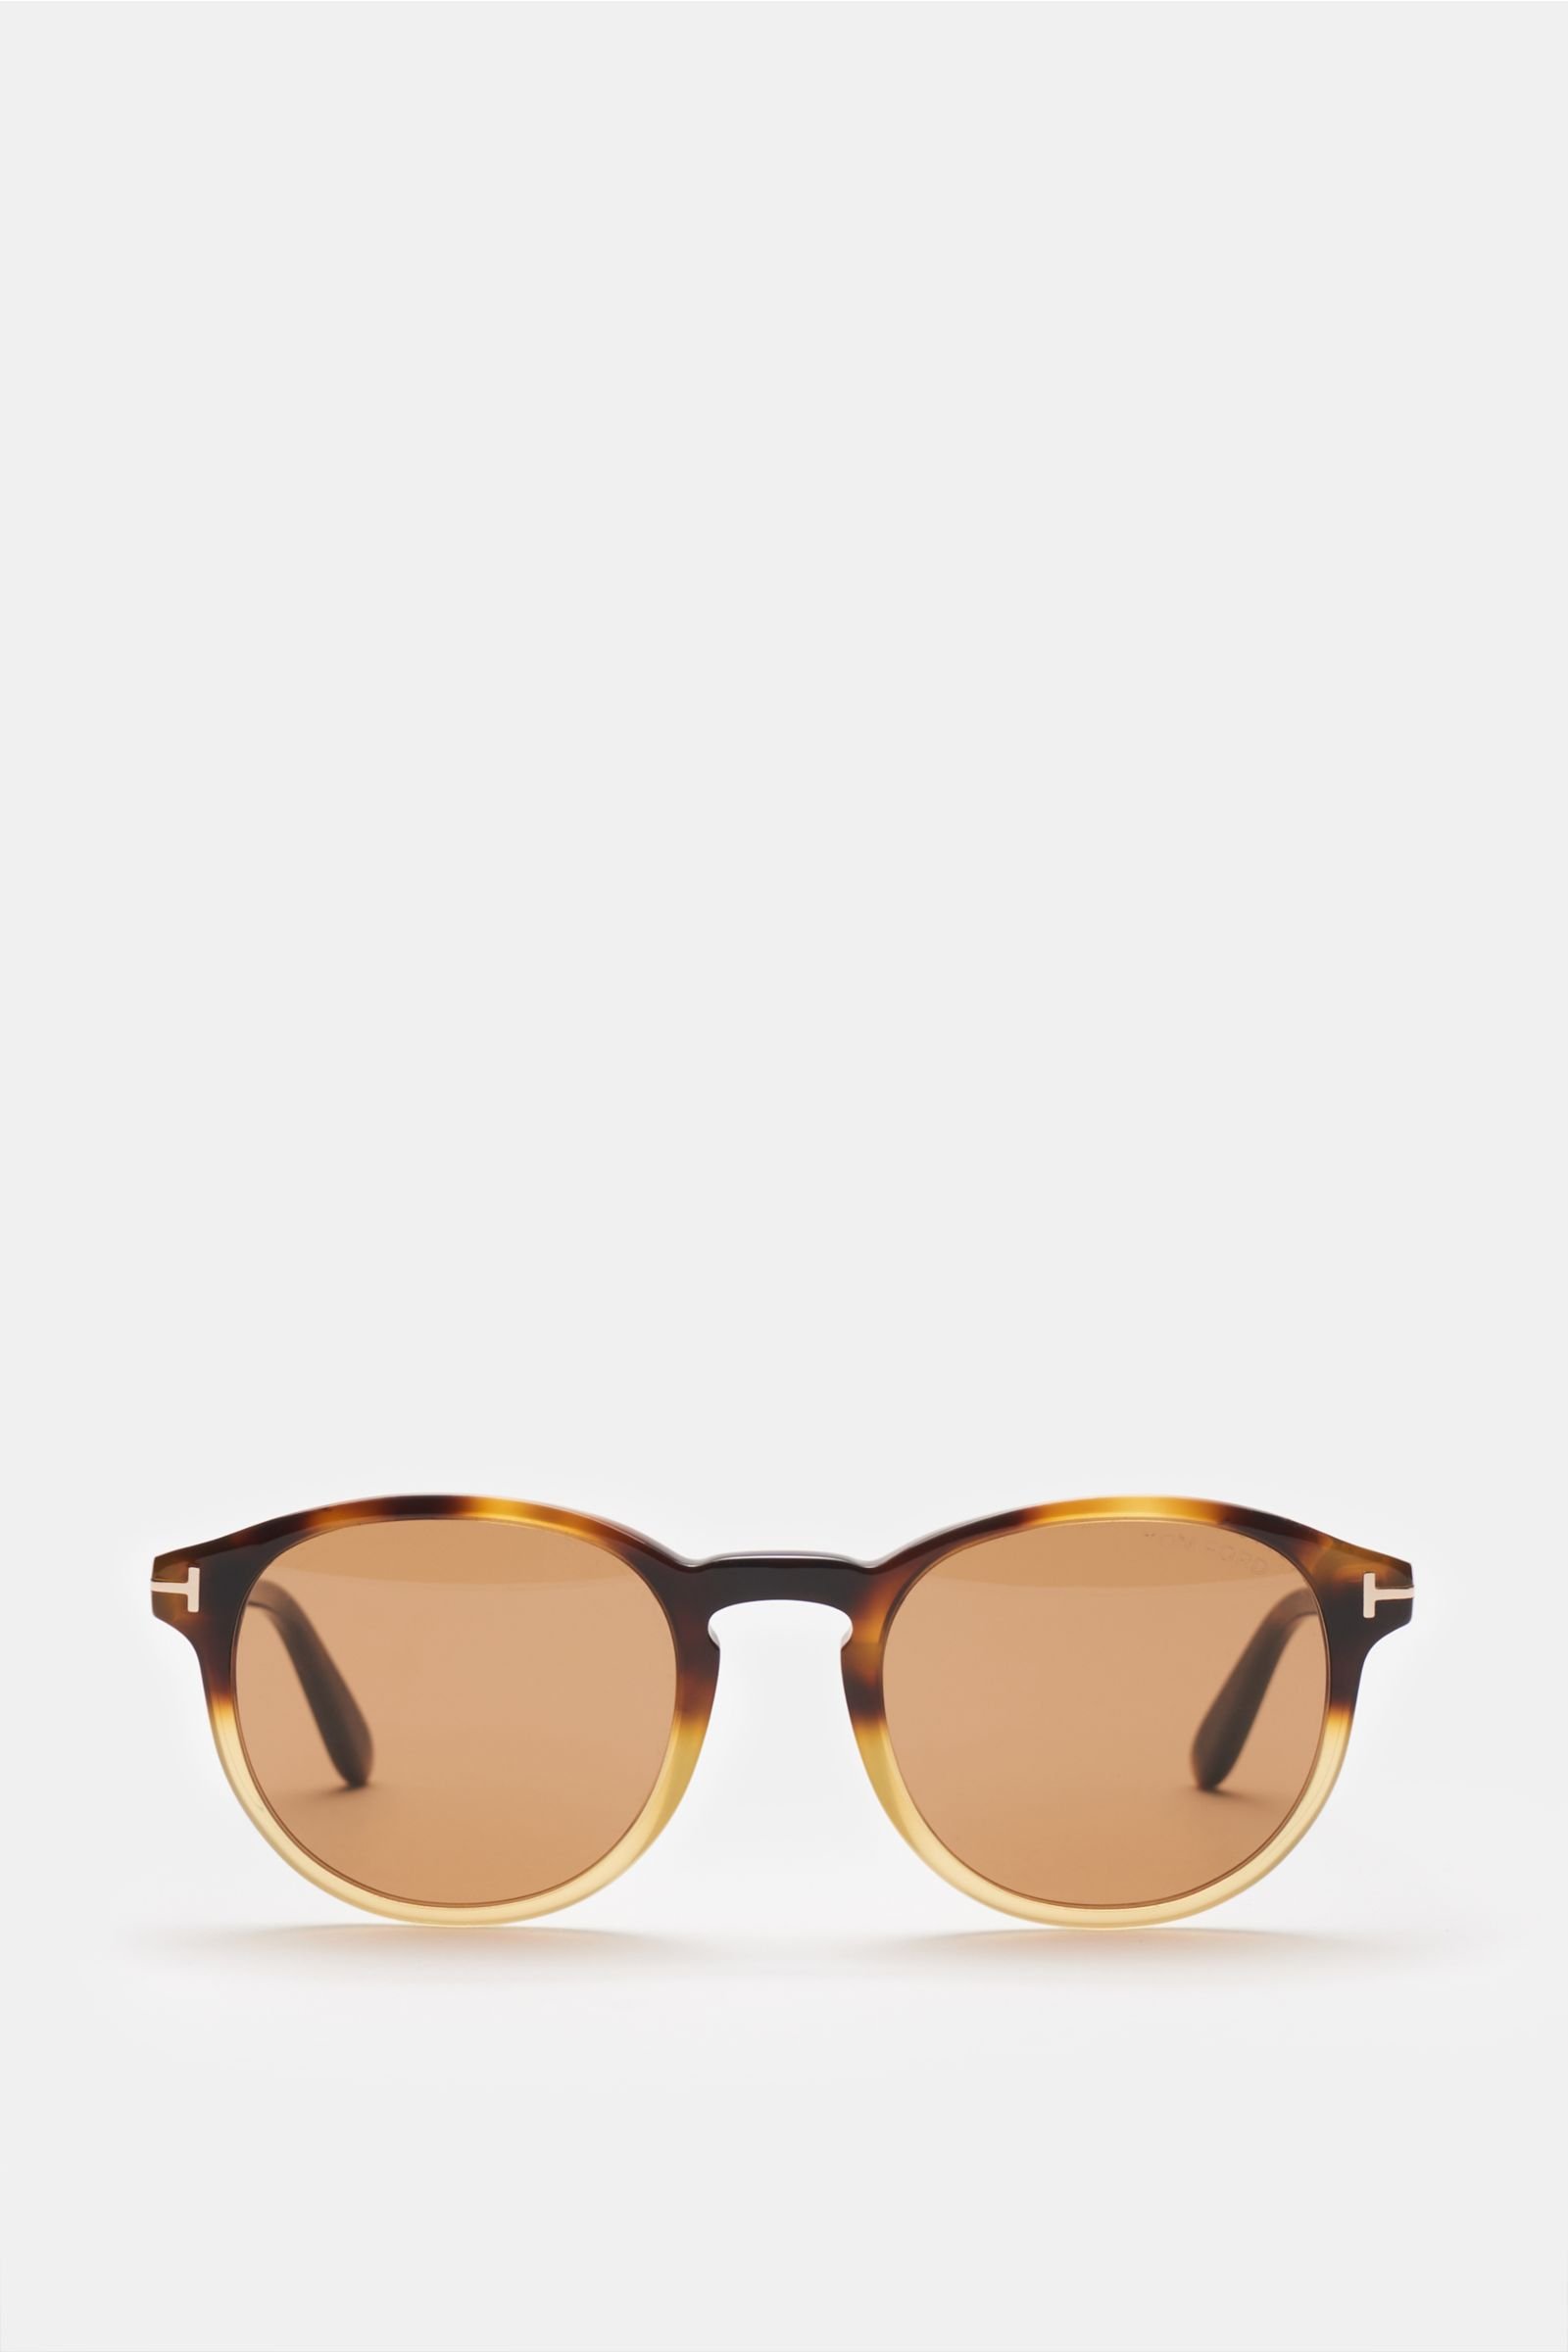 Sunglasses 'Dante' light brown/dark brown